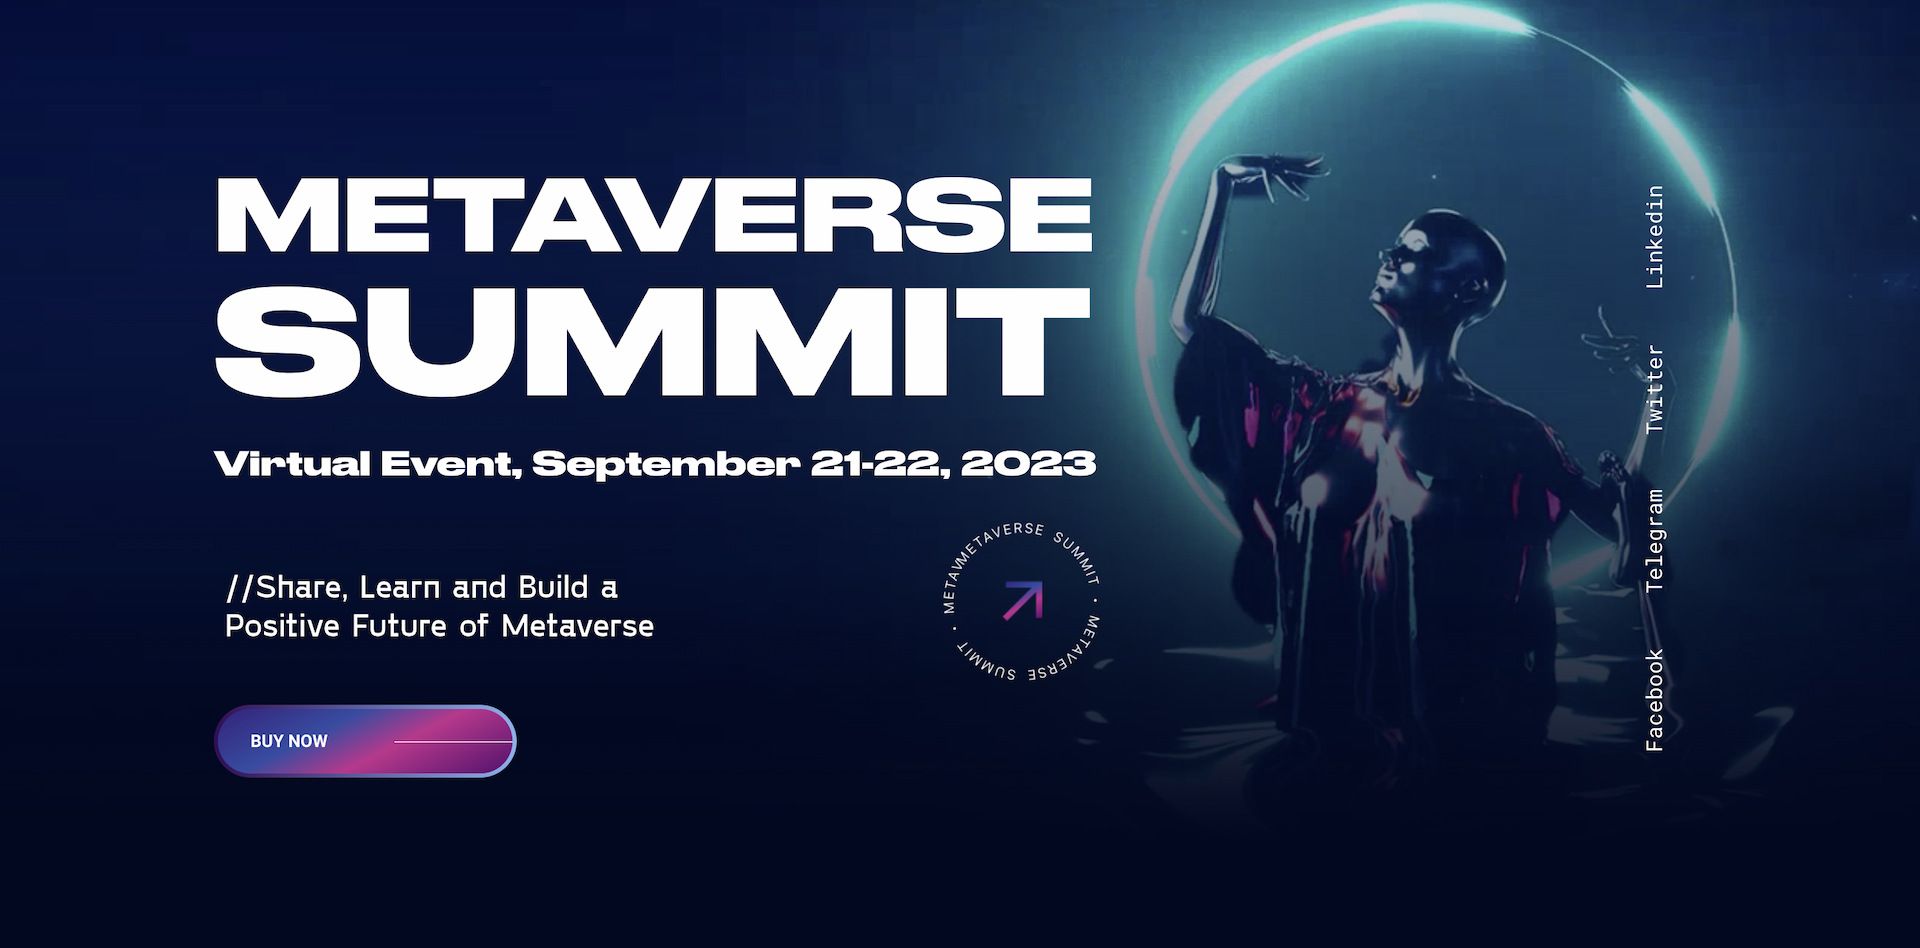 Metaverse Summit